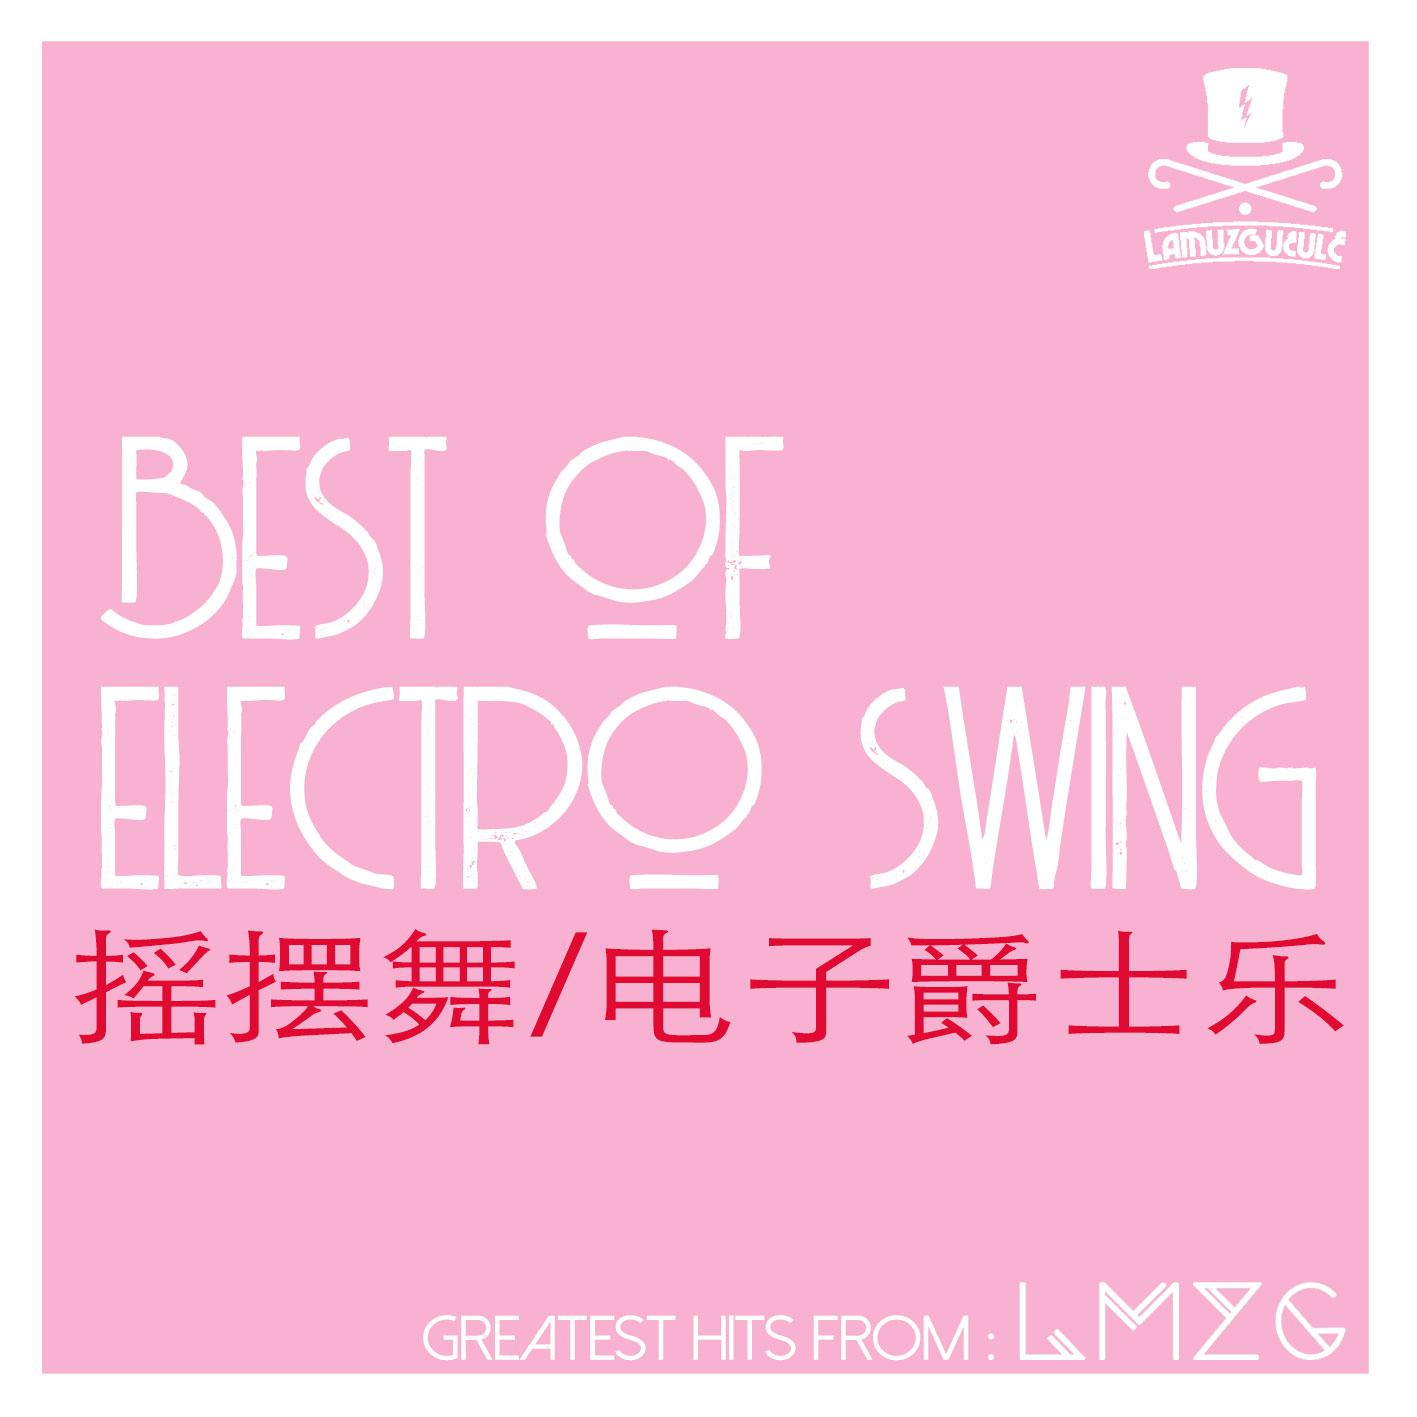 Electro Swing  yao bai wu dian zi jue shi yue  Best Of LMZG  Lamuzgueule